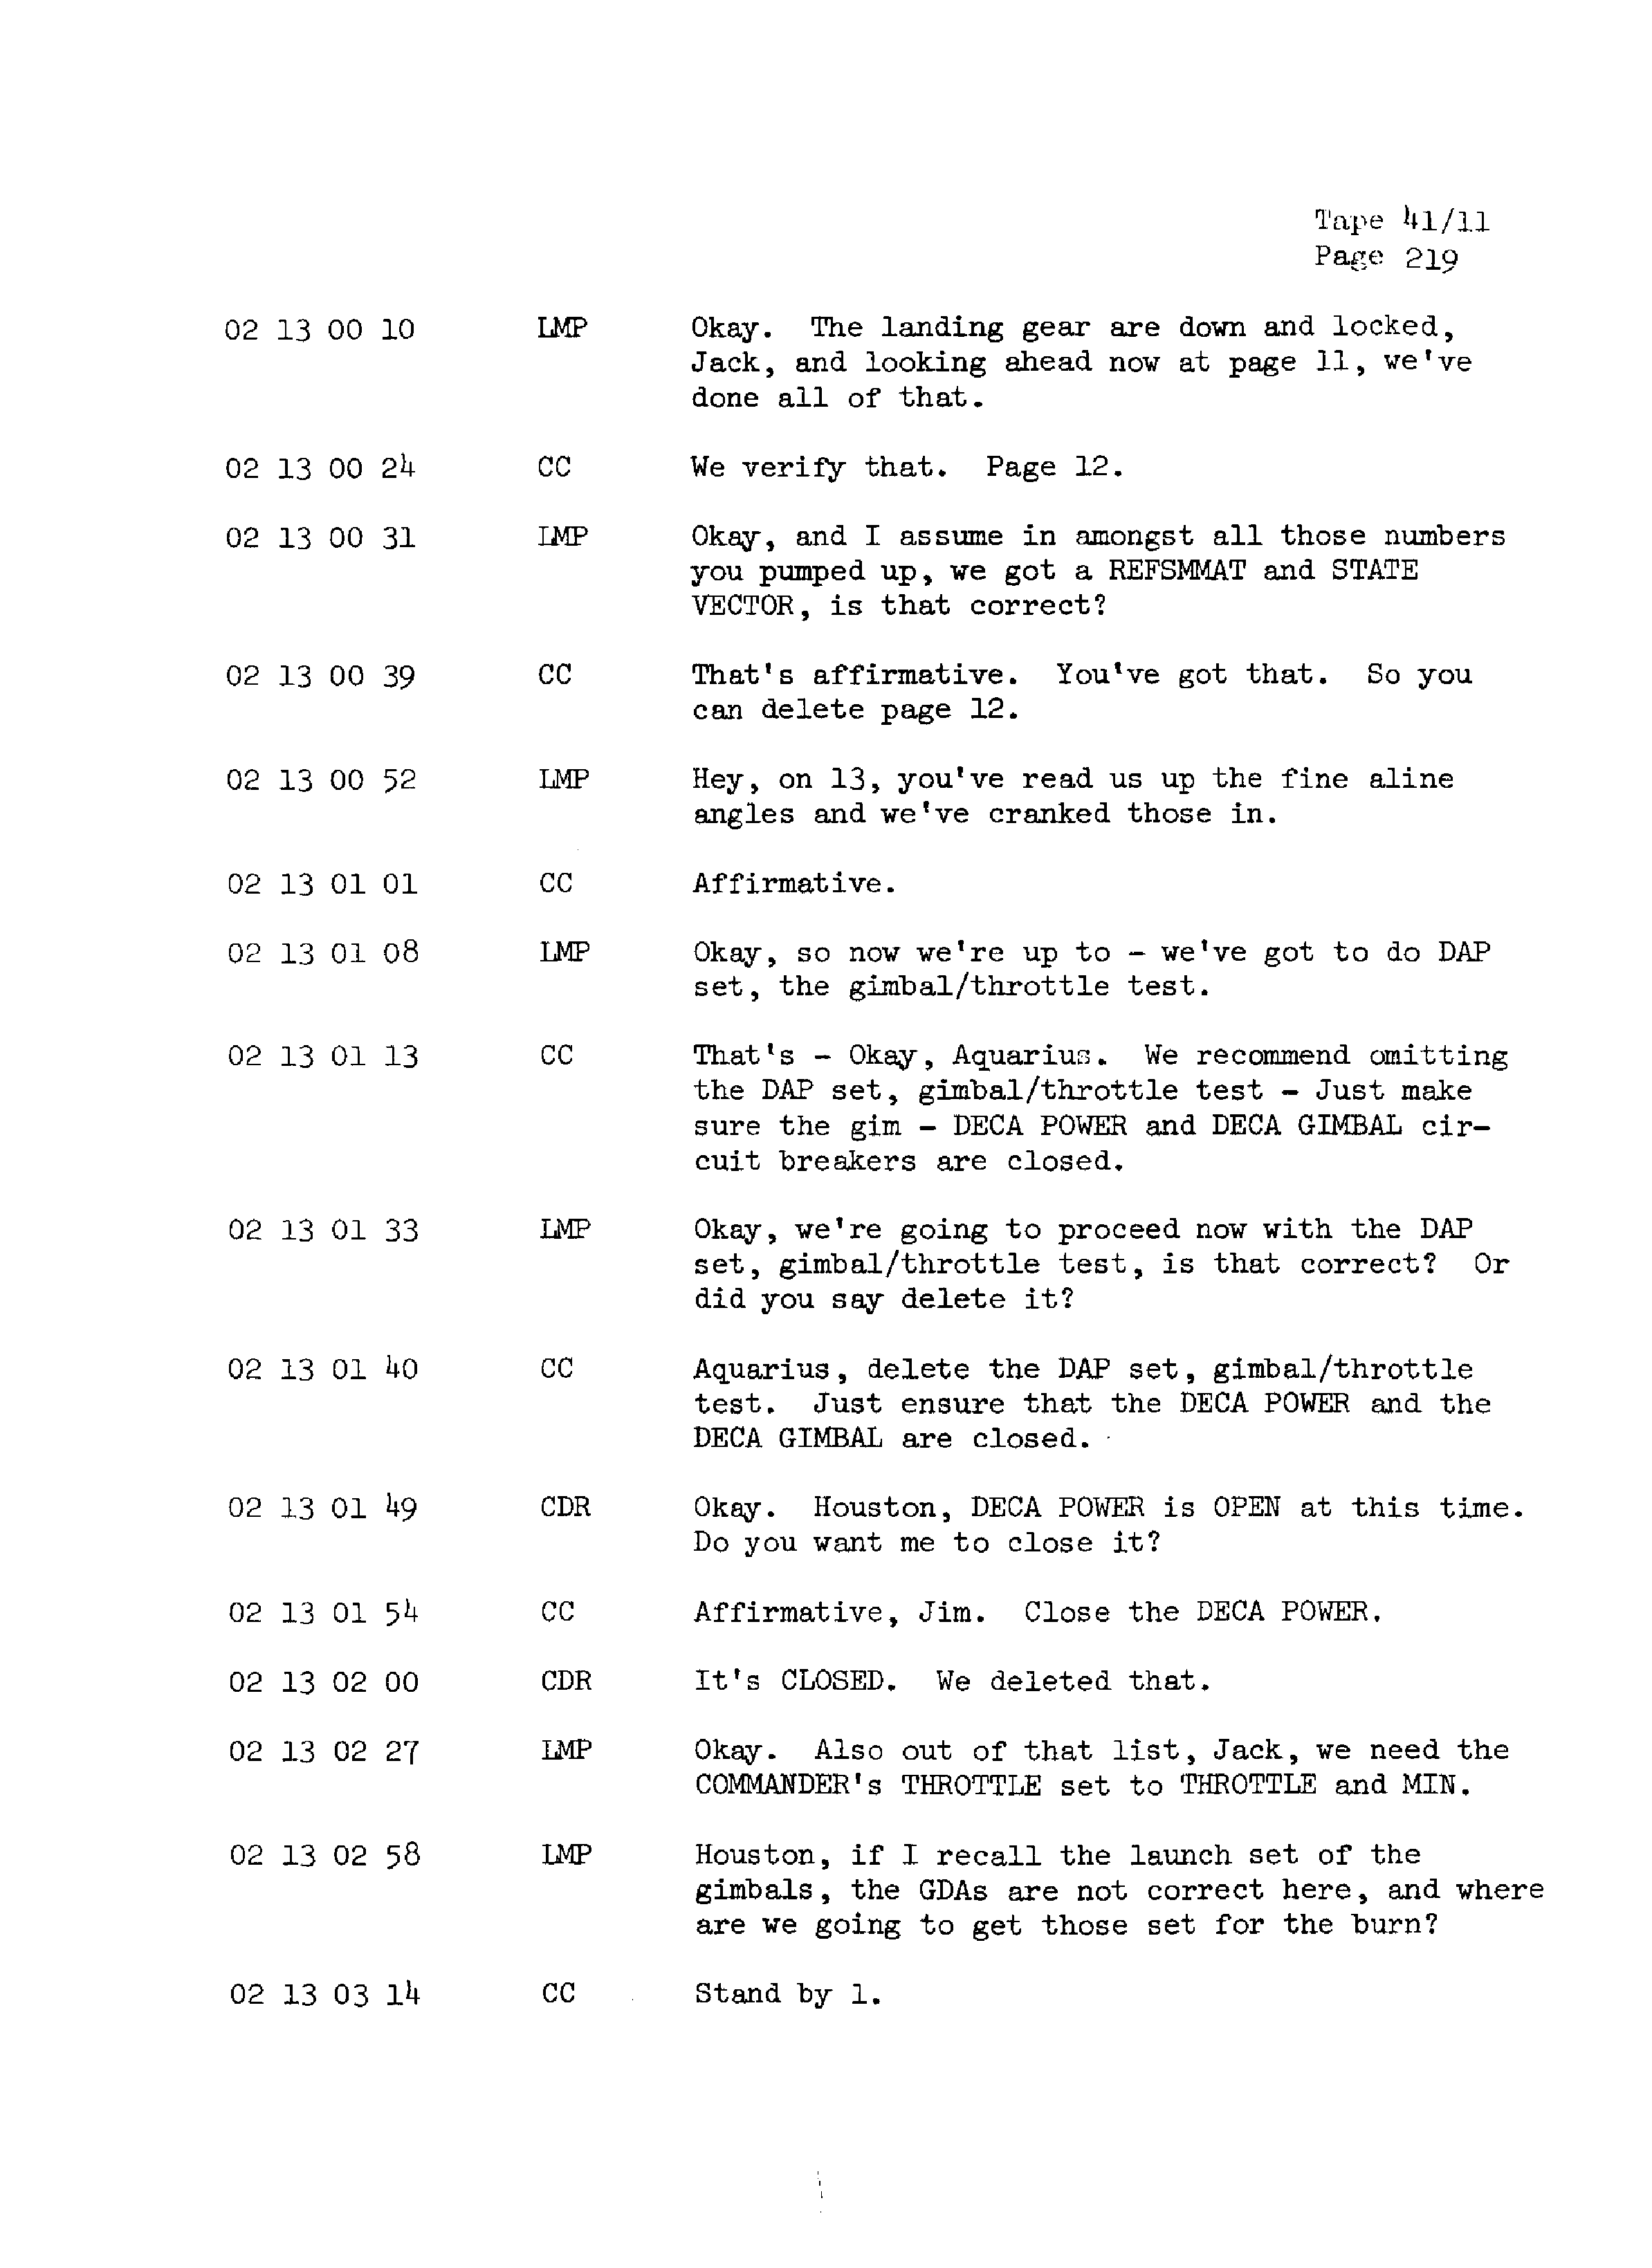 Page 226 of Apollo 13’s original transcript